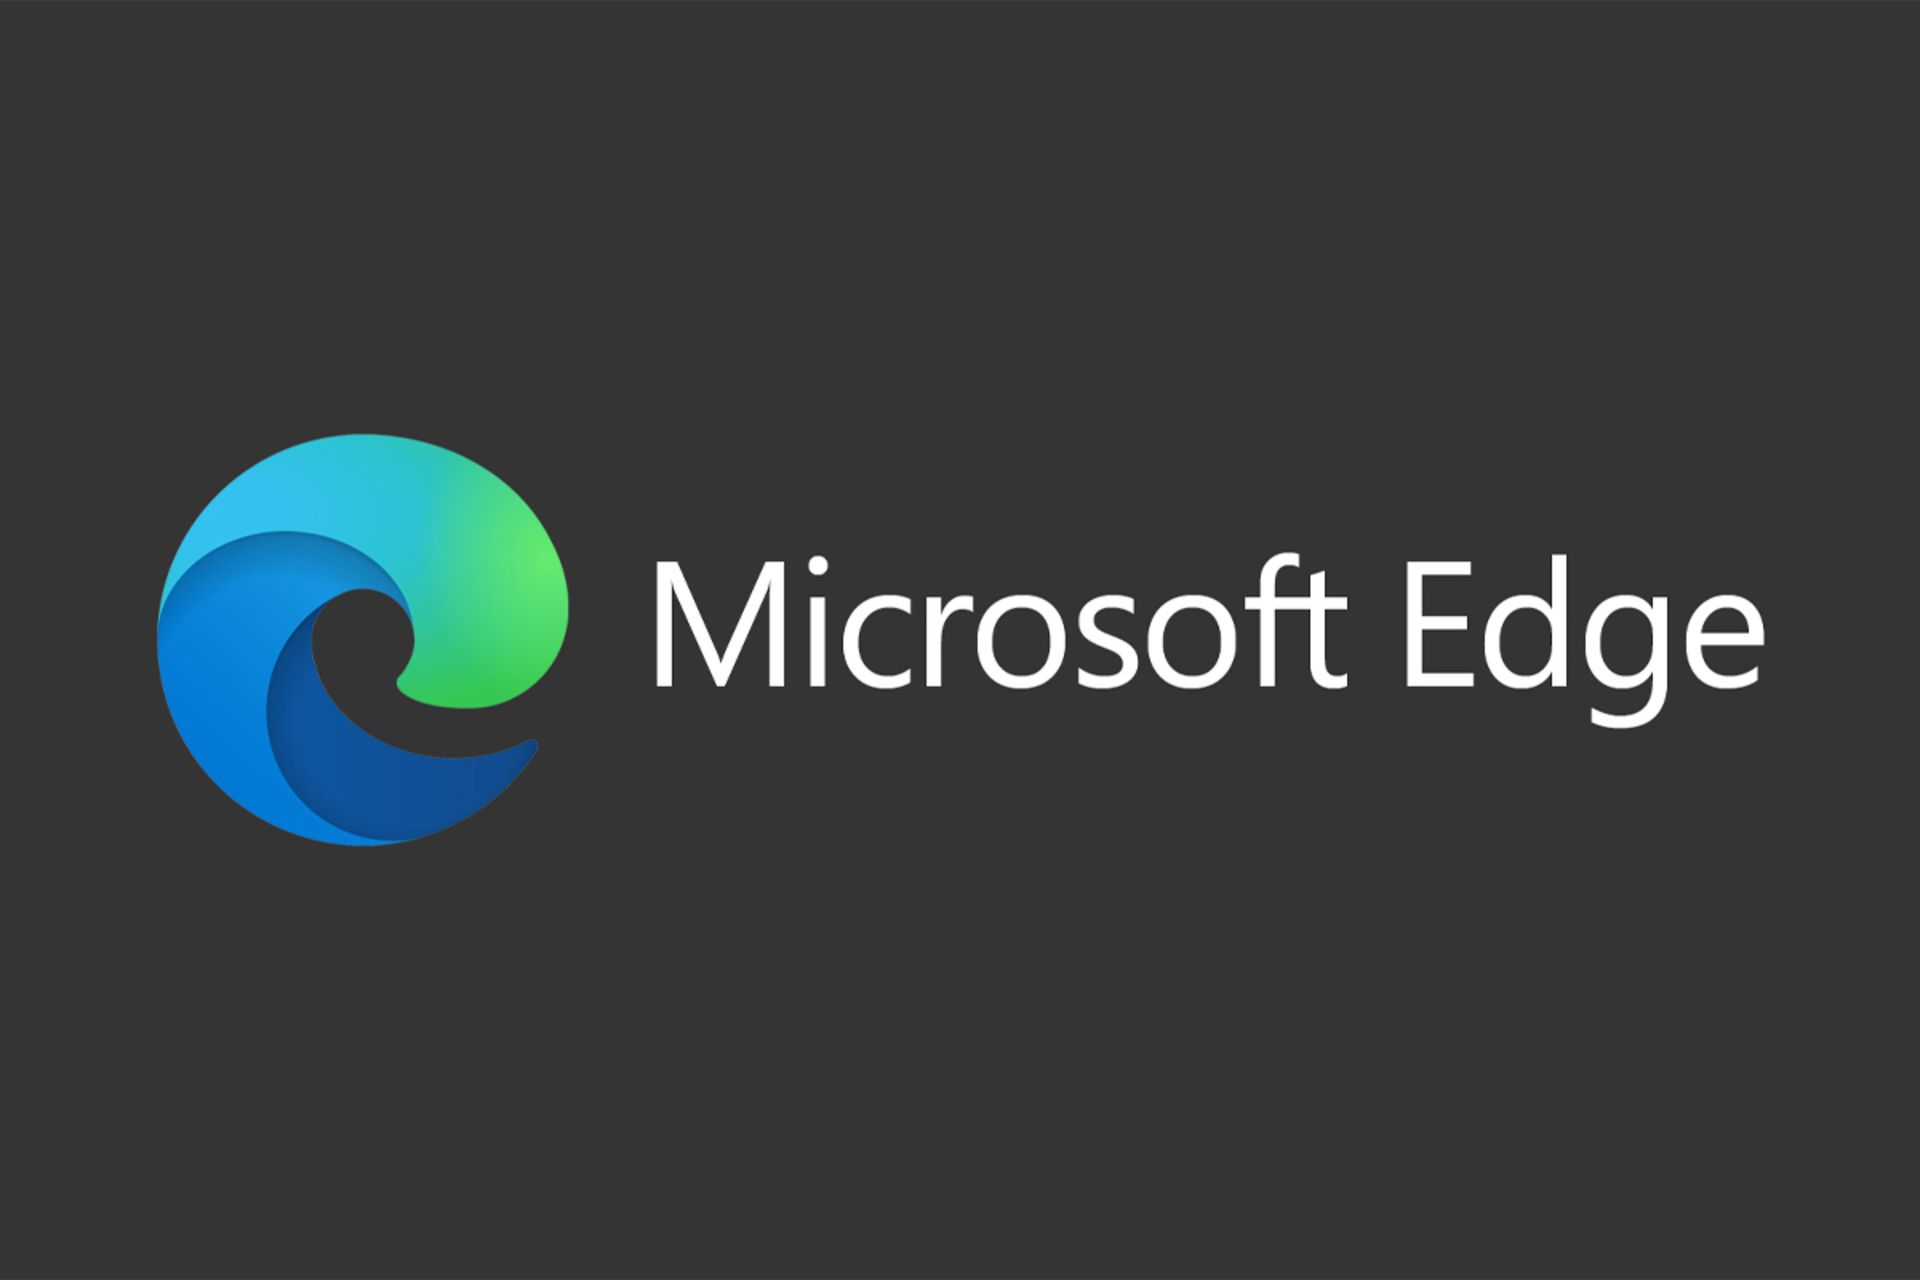 لوگو رنگی مایکروسافت اج / Microsoft Edge در پس زمینه خاکستری